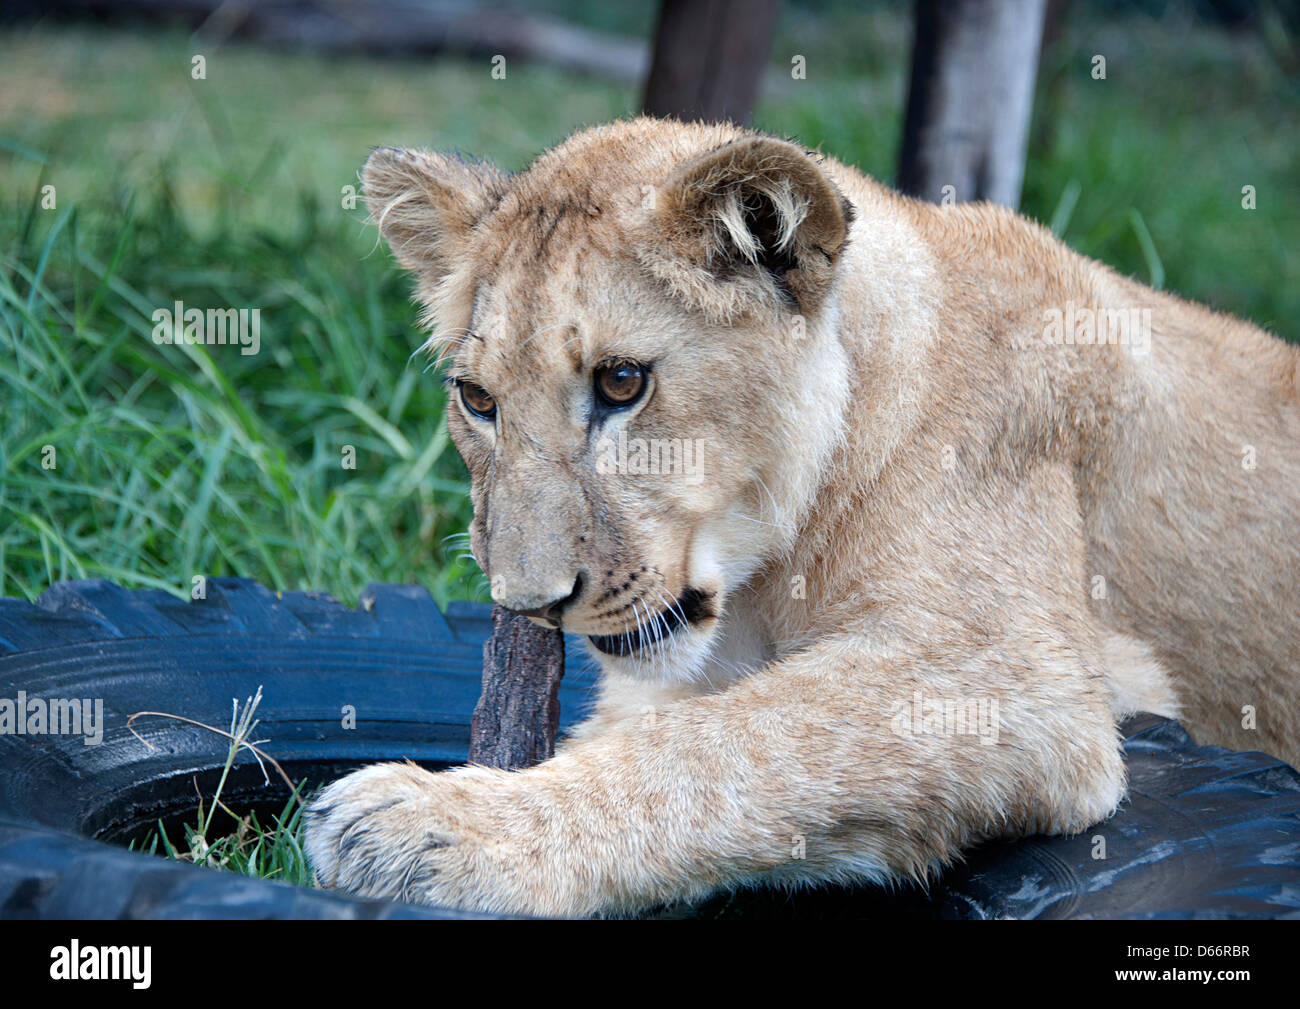 Lion cub in appoggio su di un pneumatico di una macchina in erba morsi su un bastone. Antelope Park, Zimbabwe. Foto Stock